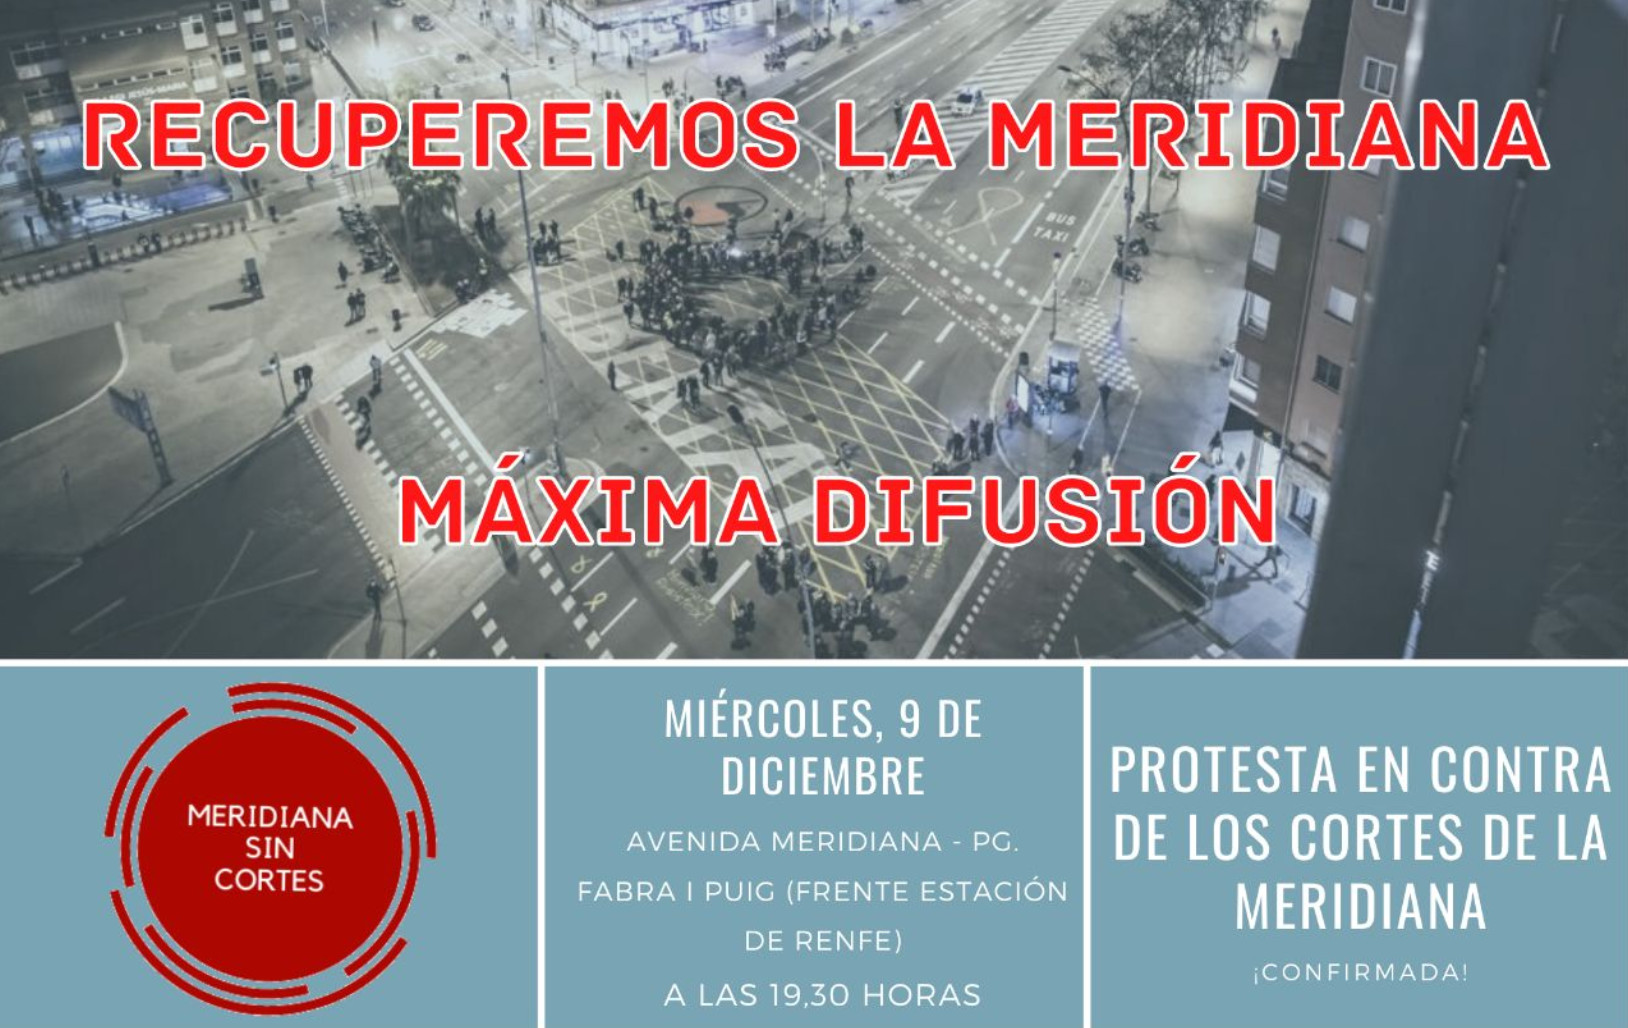 Convocan una protesta contra los cortes de la Meridiana / TELEGRAM